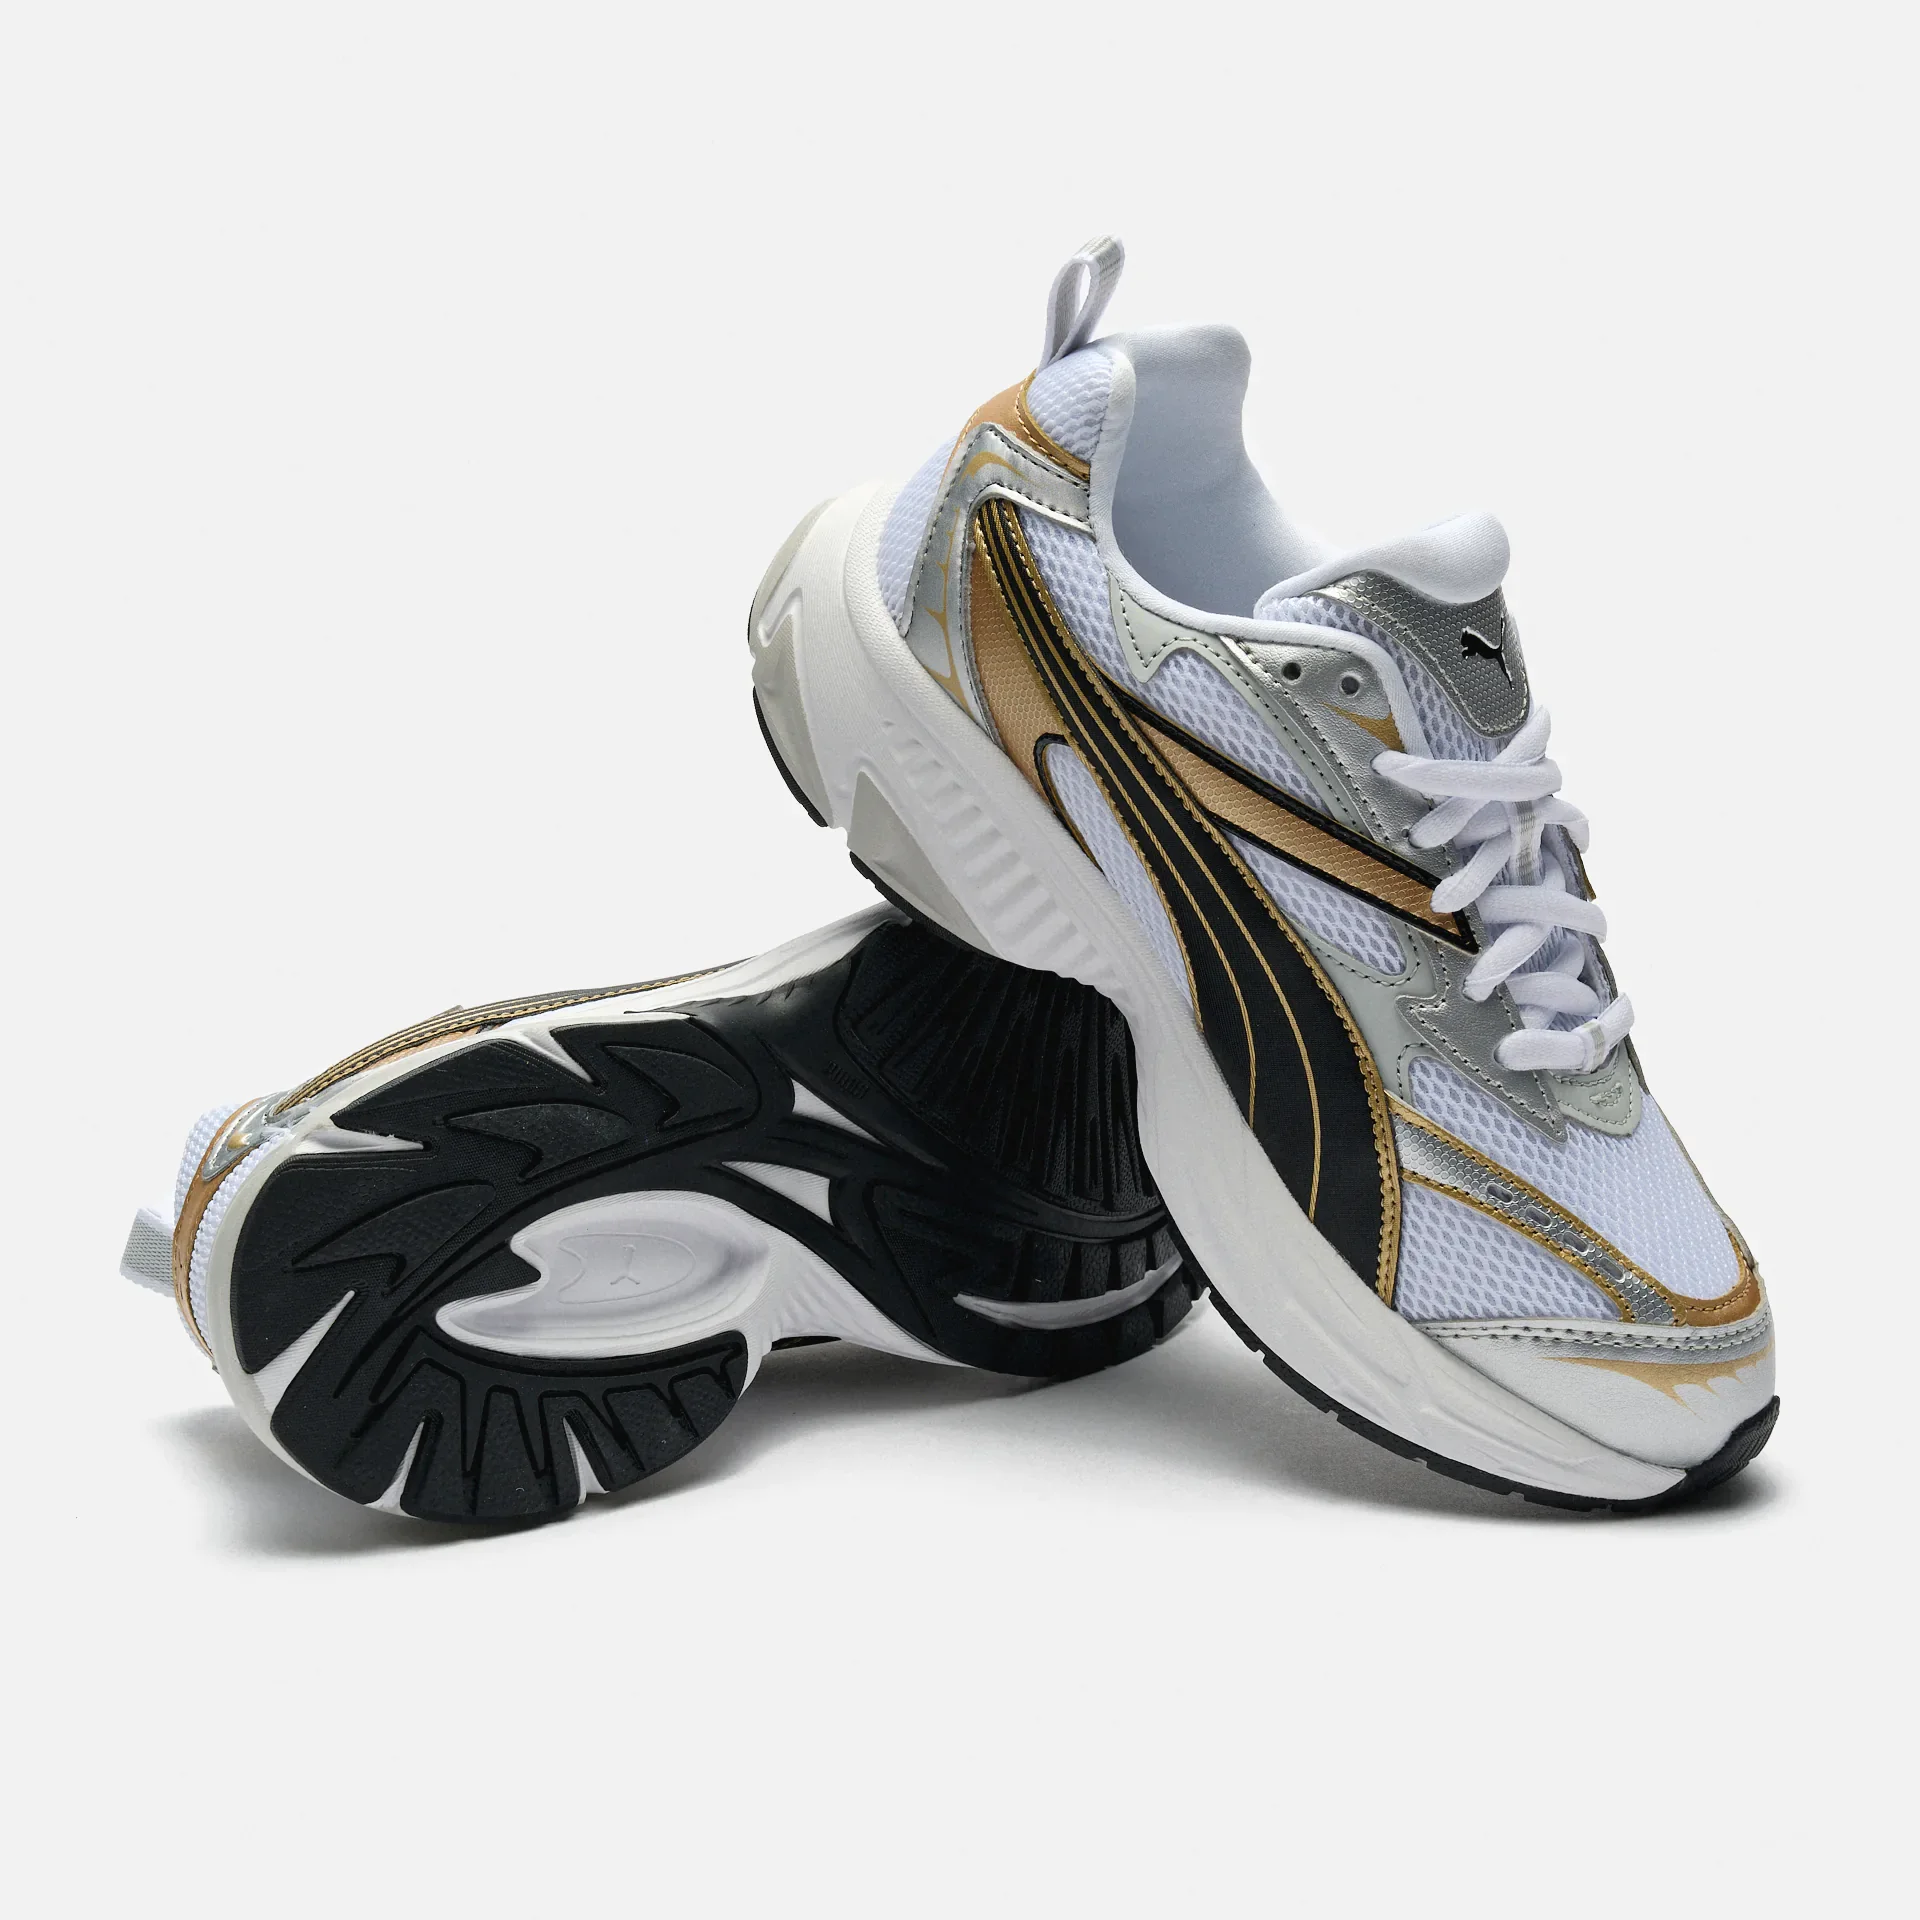 PUMA Morphic Sneaker White/Gold/Silver